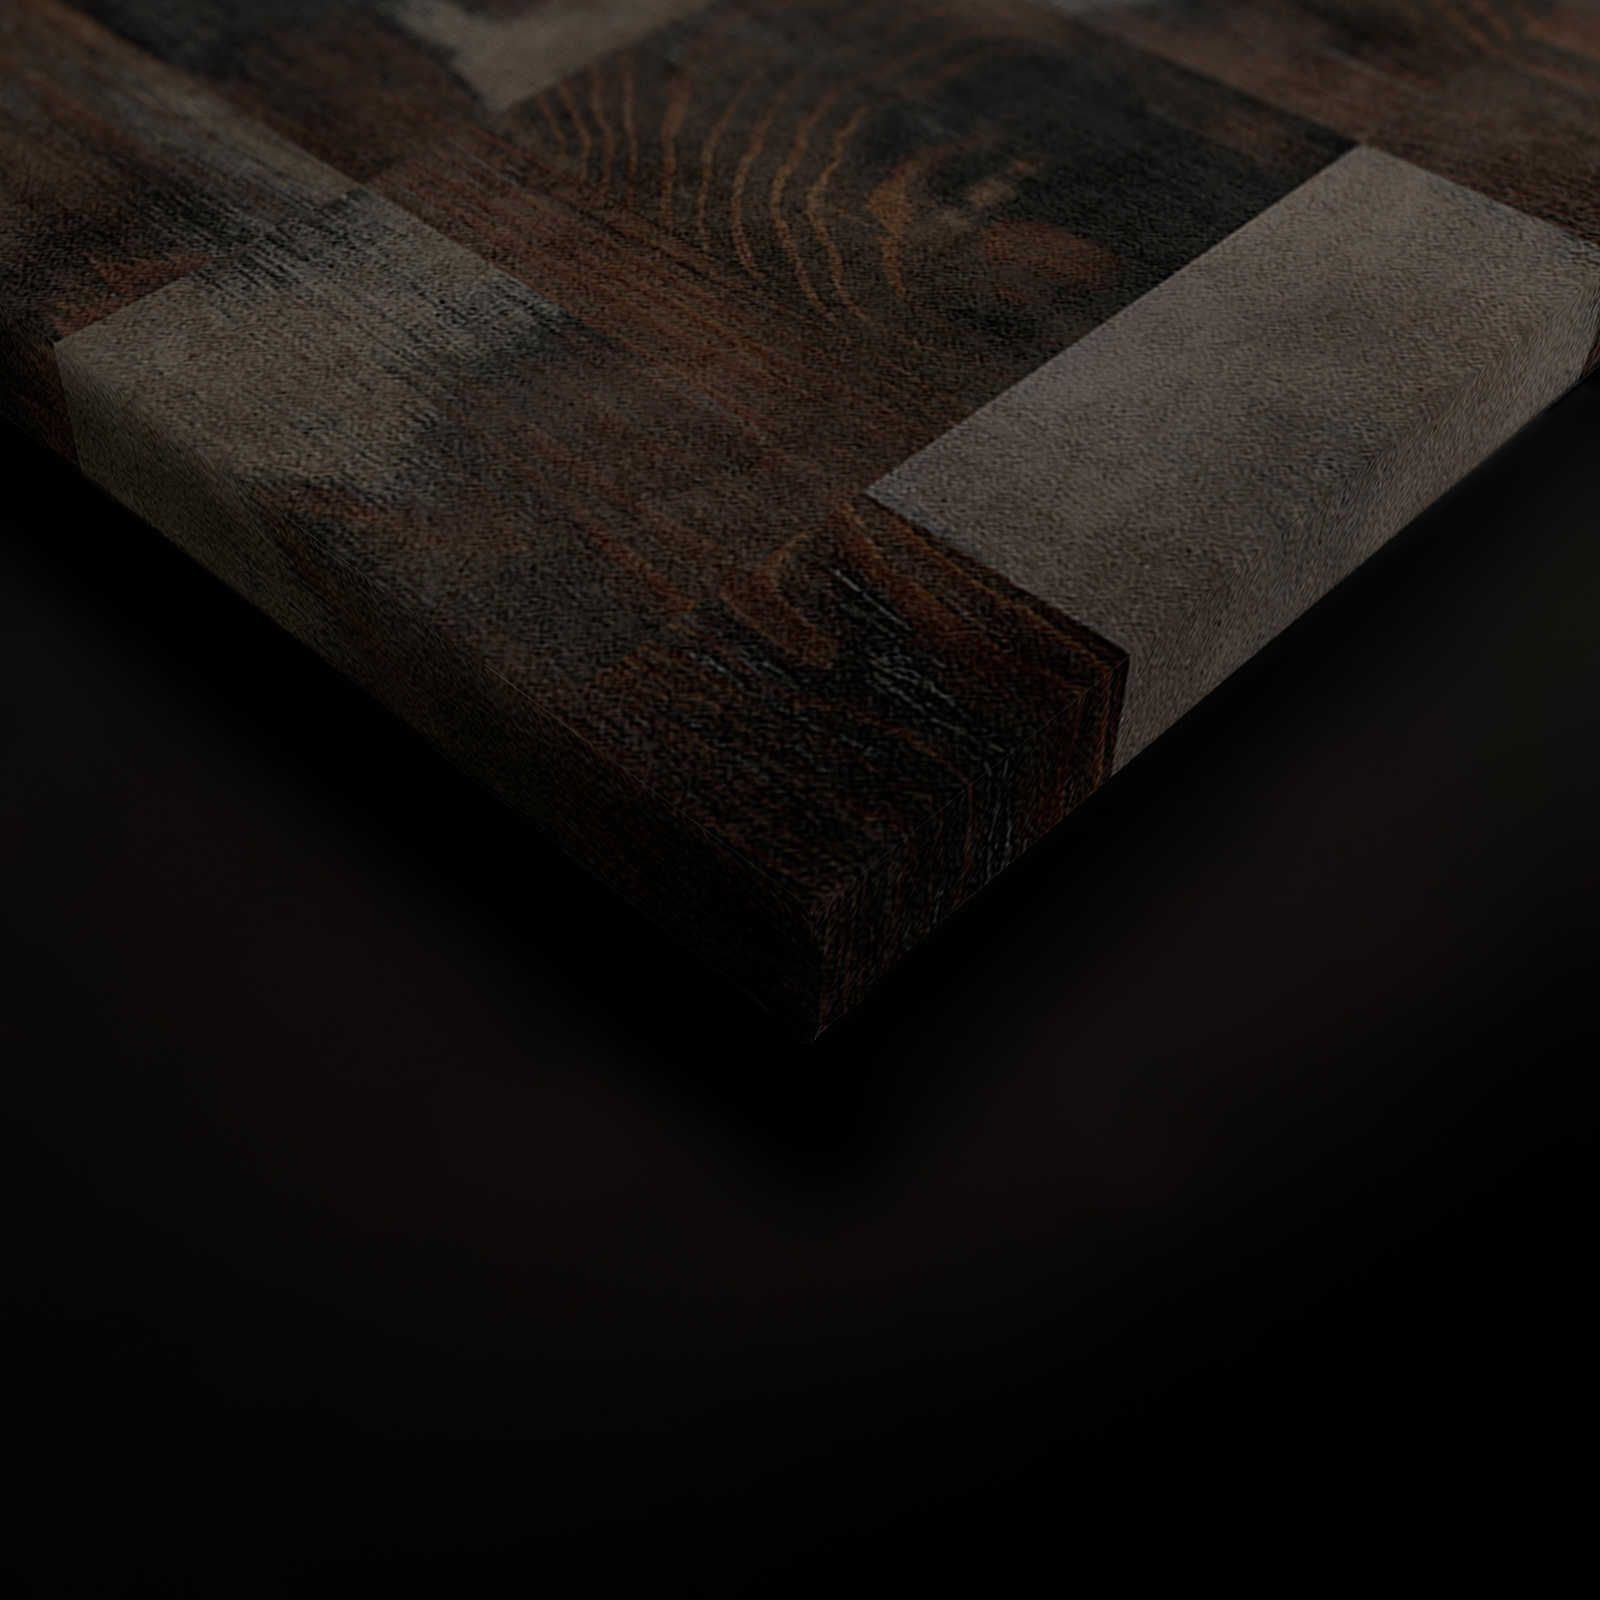             Fabbrica 2 - Tela effetto legno con motivo a scacchiera nell'aspetto usato - 0,90 m x 0,60 m
        